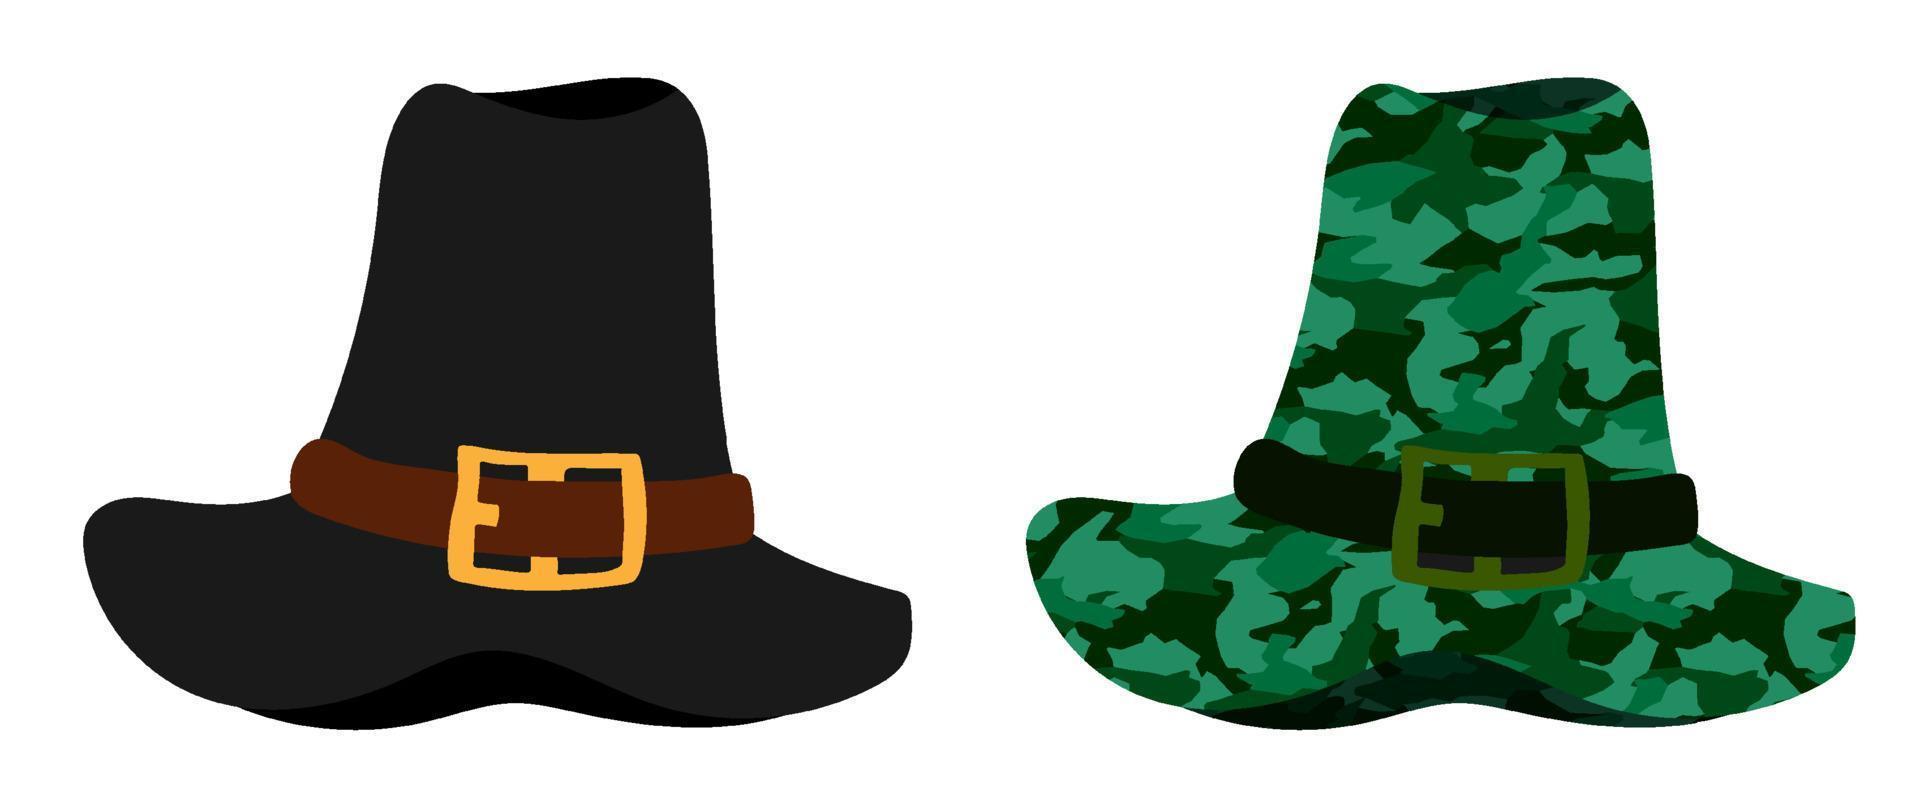 hoog pelgrim hoed in natuurlijk kleuren en camouflage. partij slijtage voor dankzegging. geschiedenis van ontwikkeling van Amerika. vector in minimalistisch vlak stijl